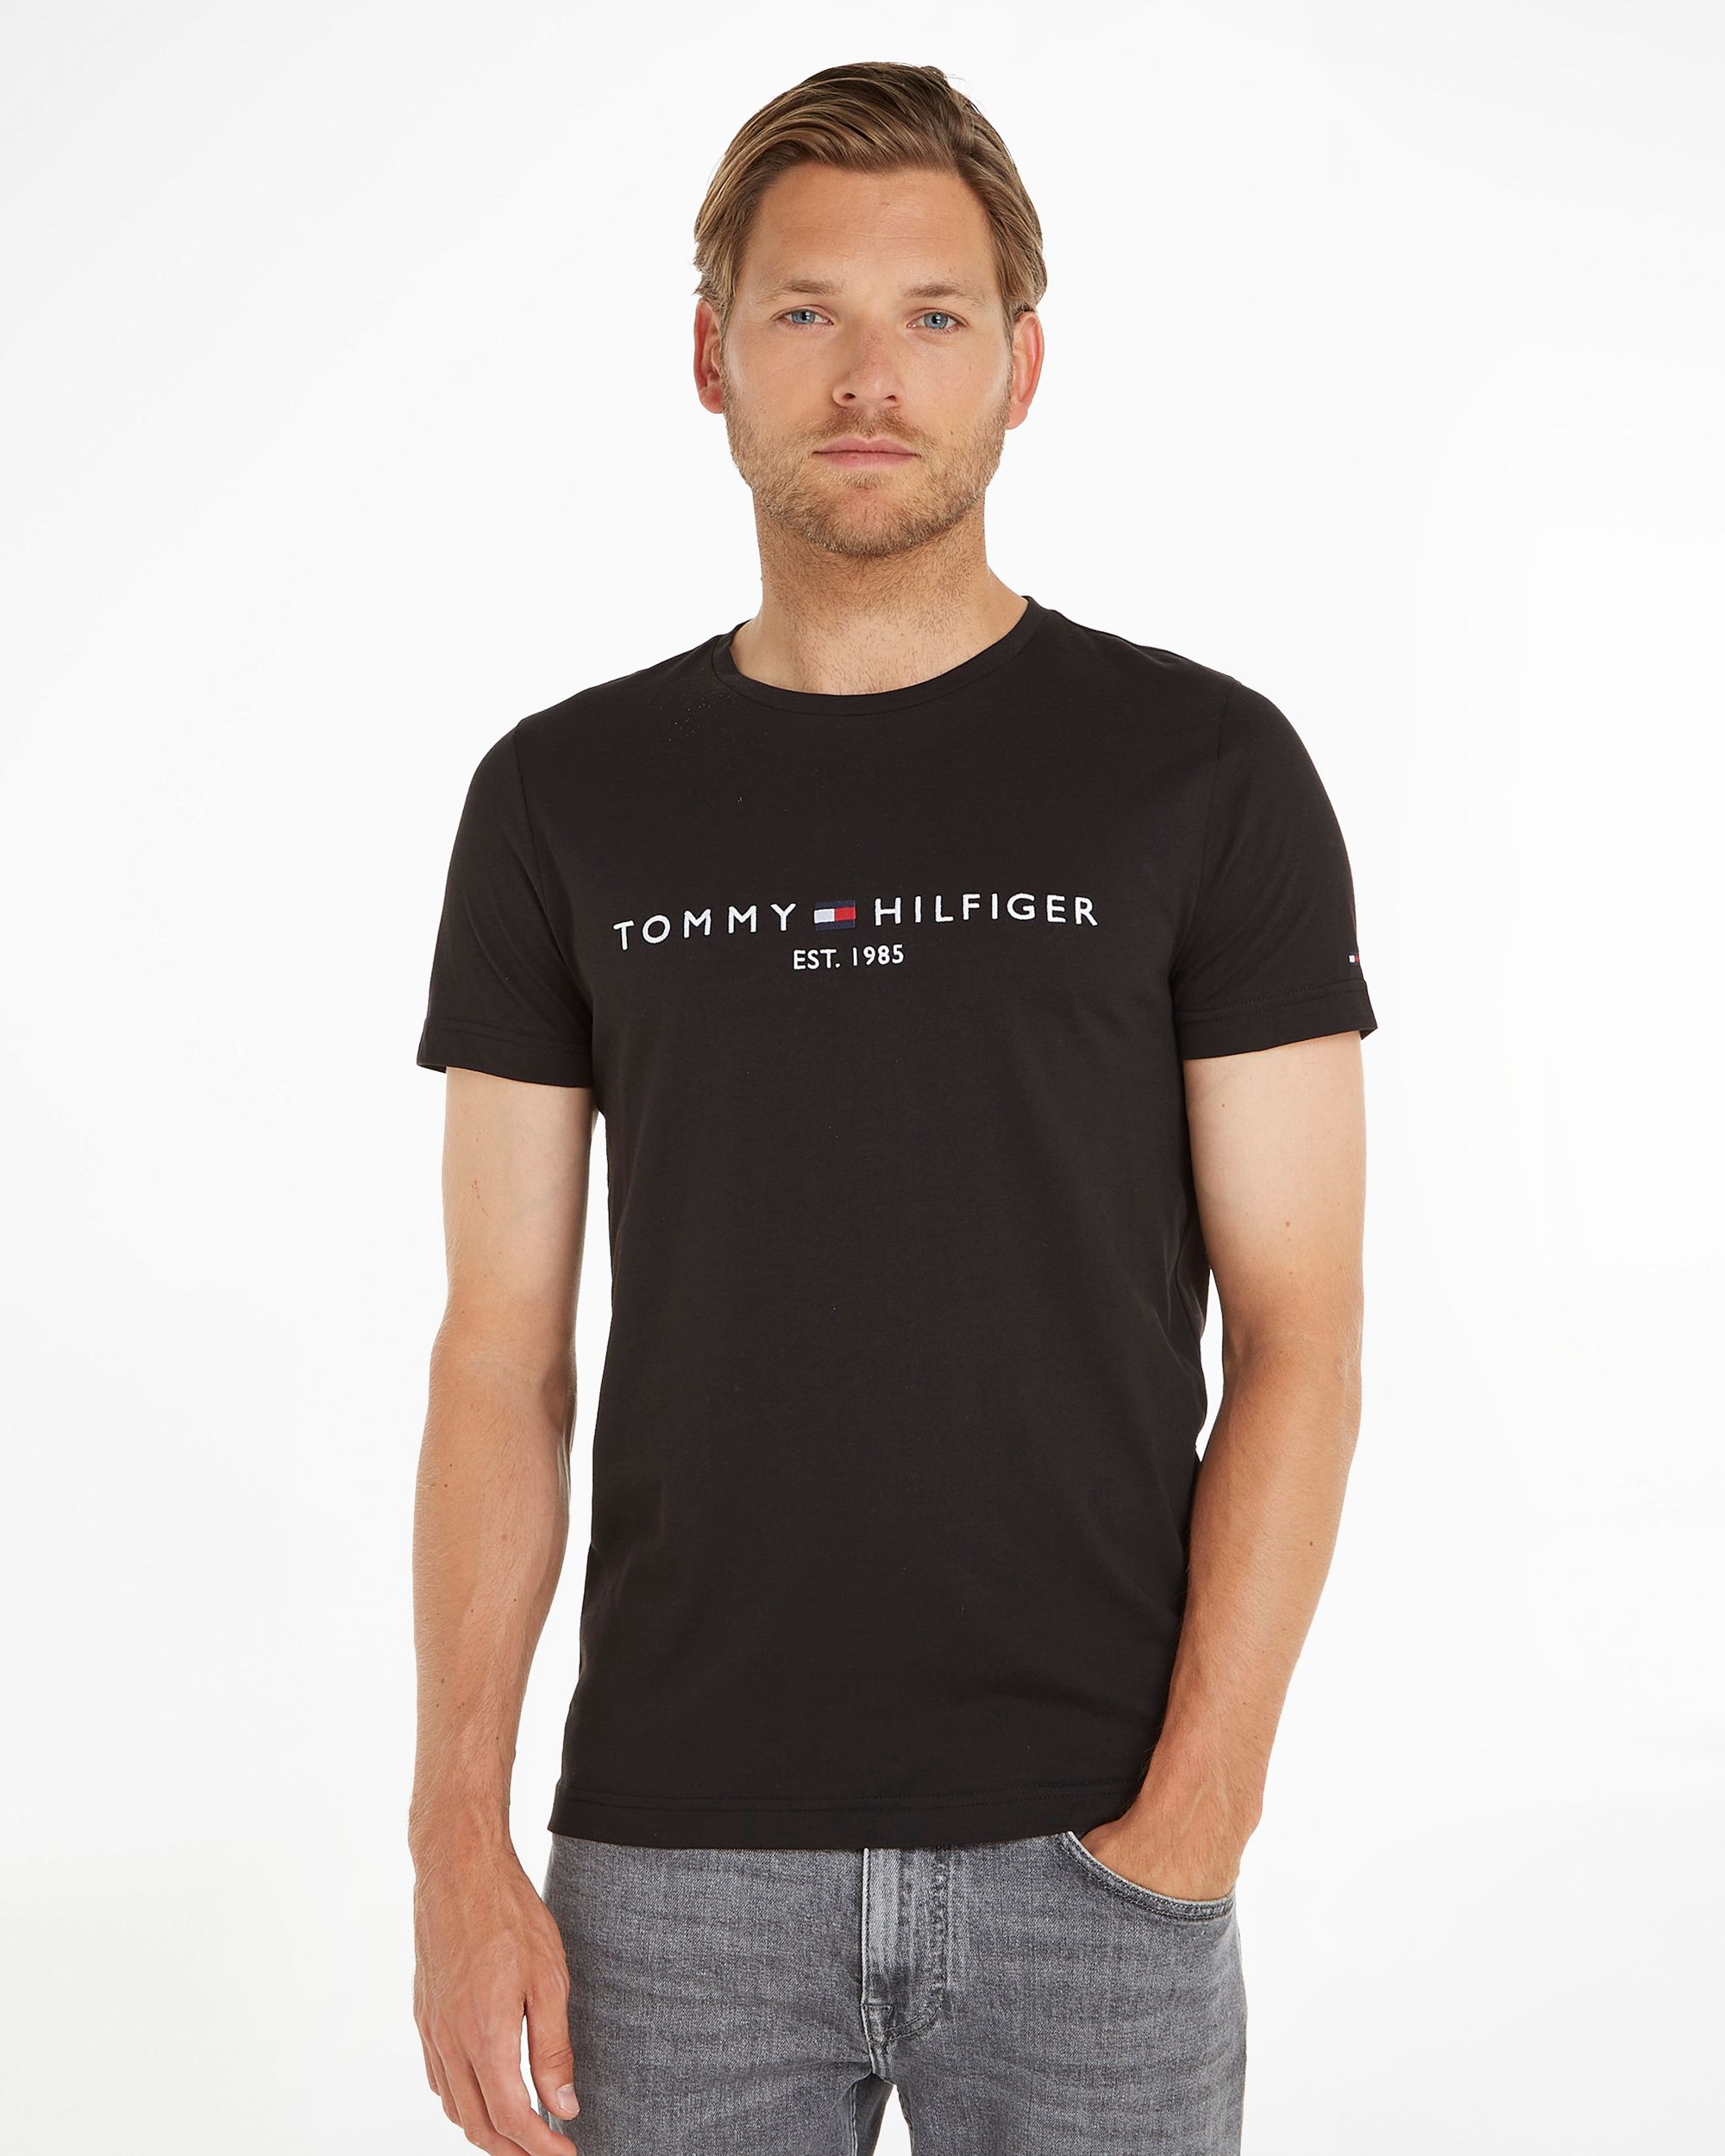 Tommy Hilfiger Menswear T-shirt KM Zwart 086995-001-L